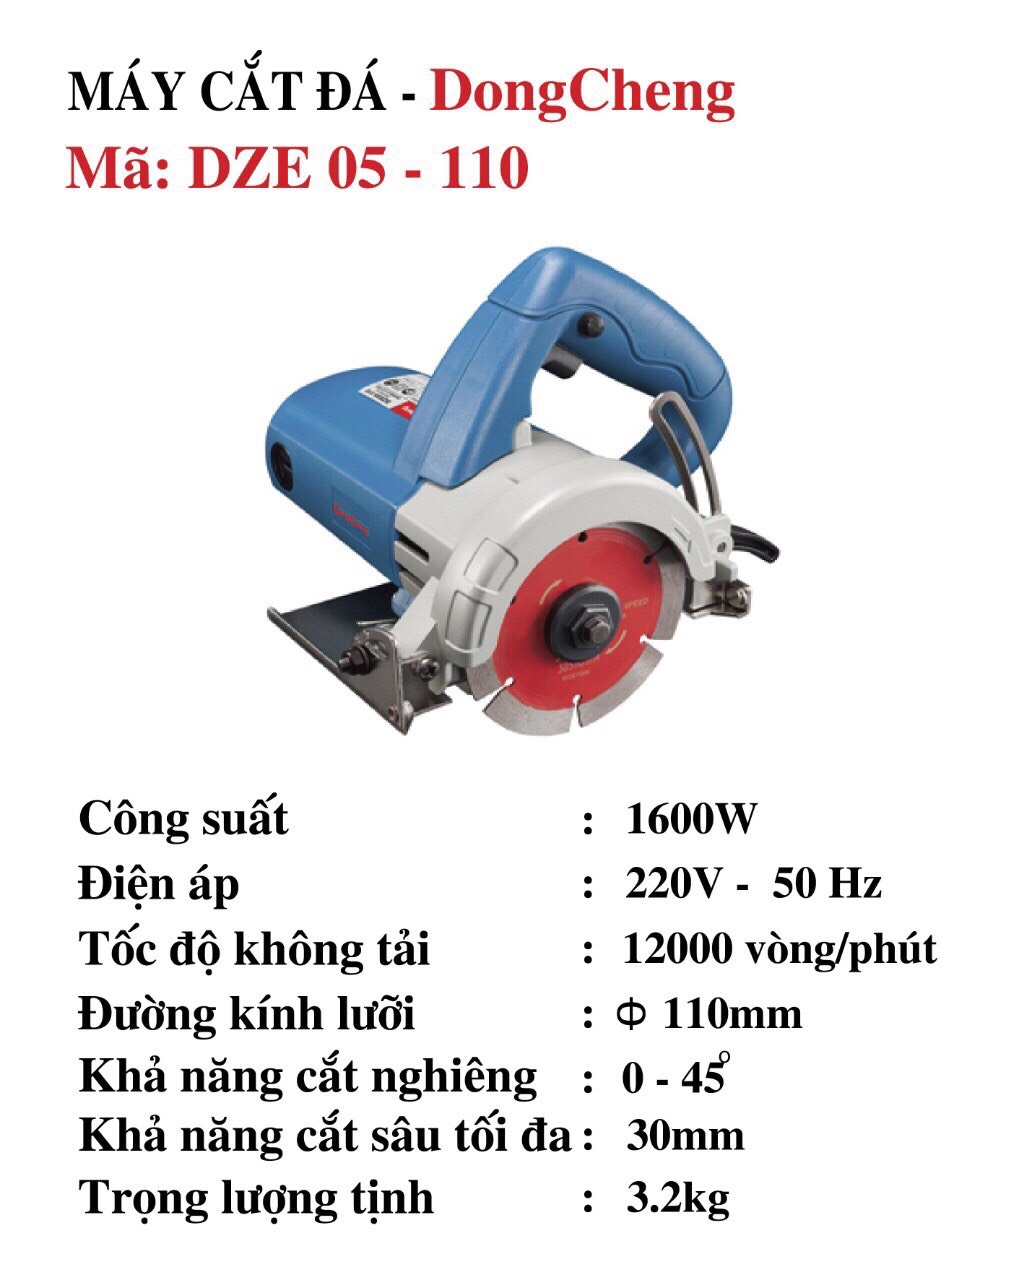 Máy Cắt Gạch Dongcheng DZE05-110